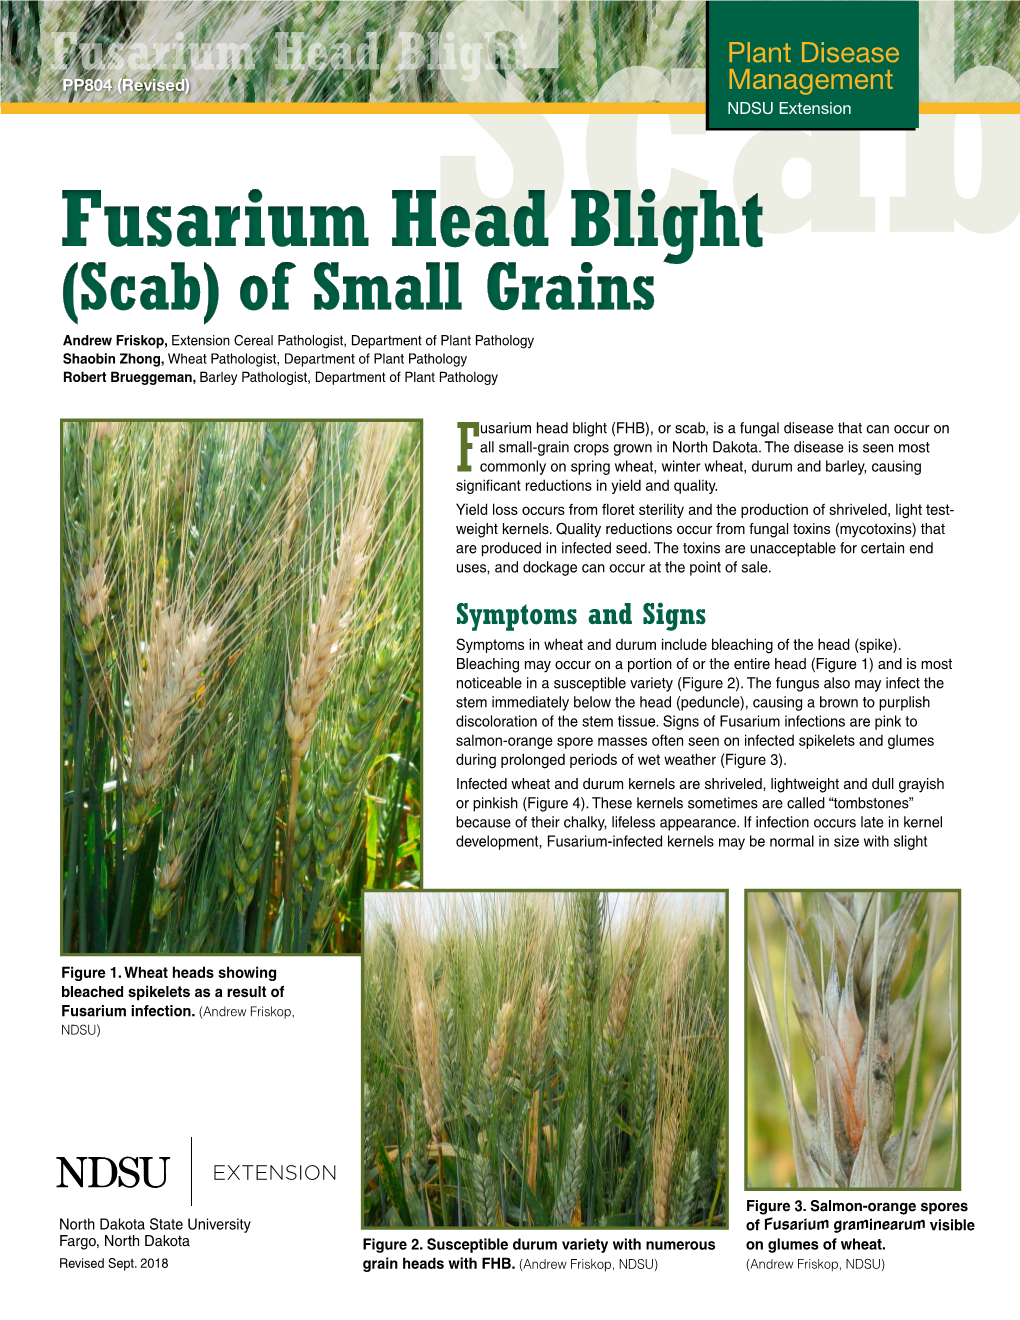 Fusarium Head Blight (Scab) of Small Grains [PP804]